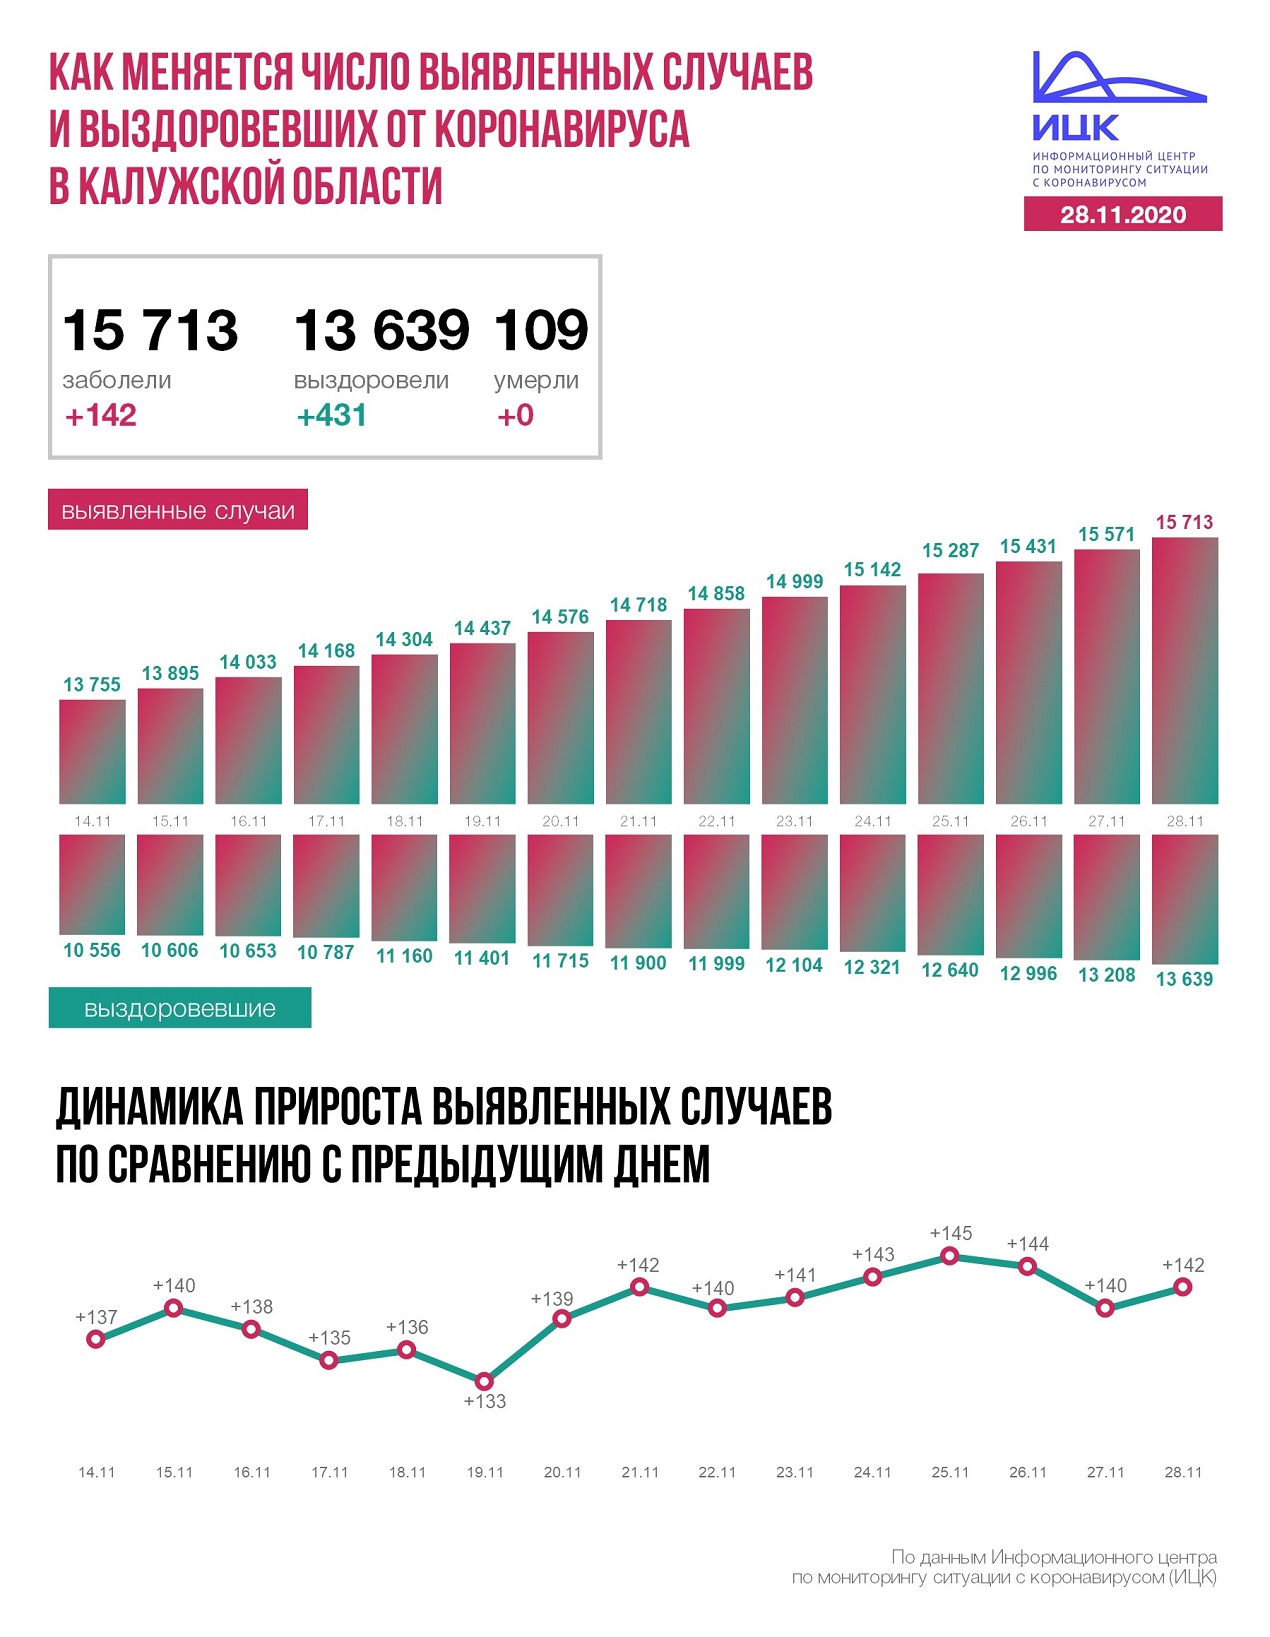 Официальные данные по коронавирусу в Калужской области на 28 ноября 2020 года.